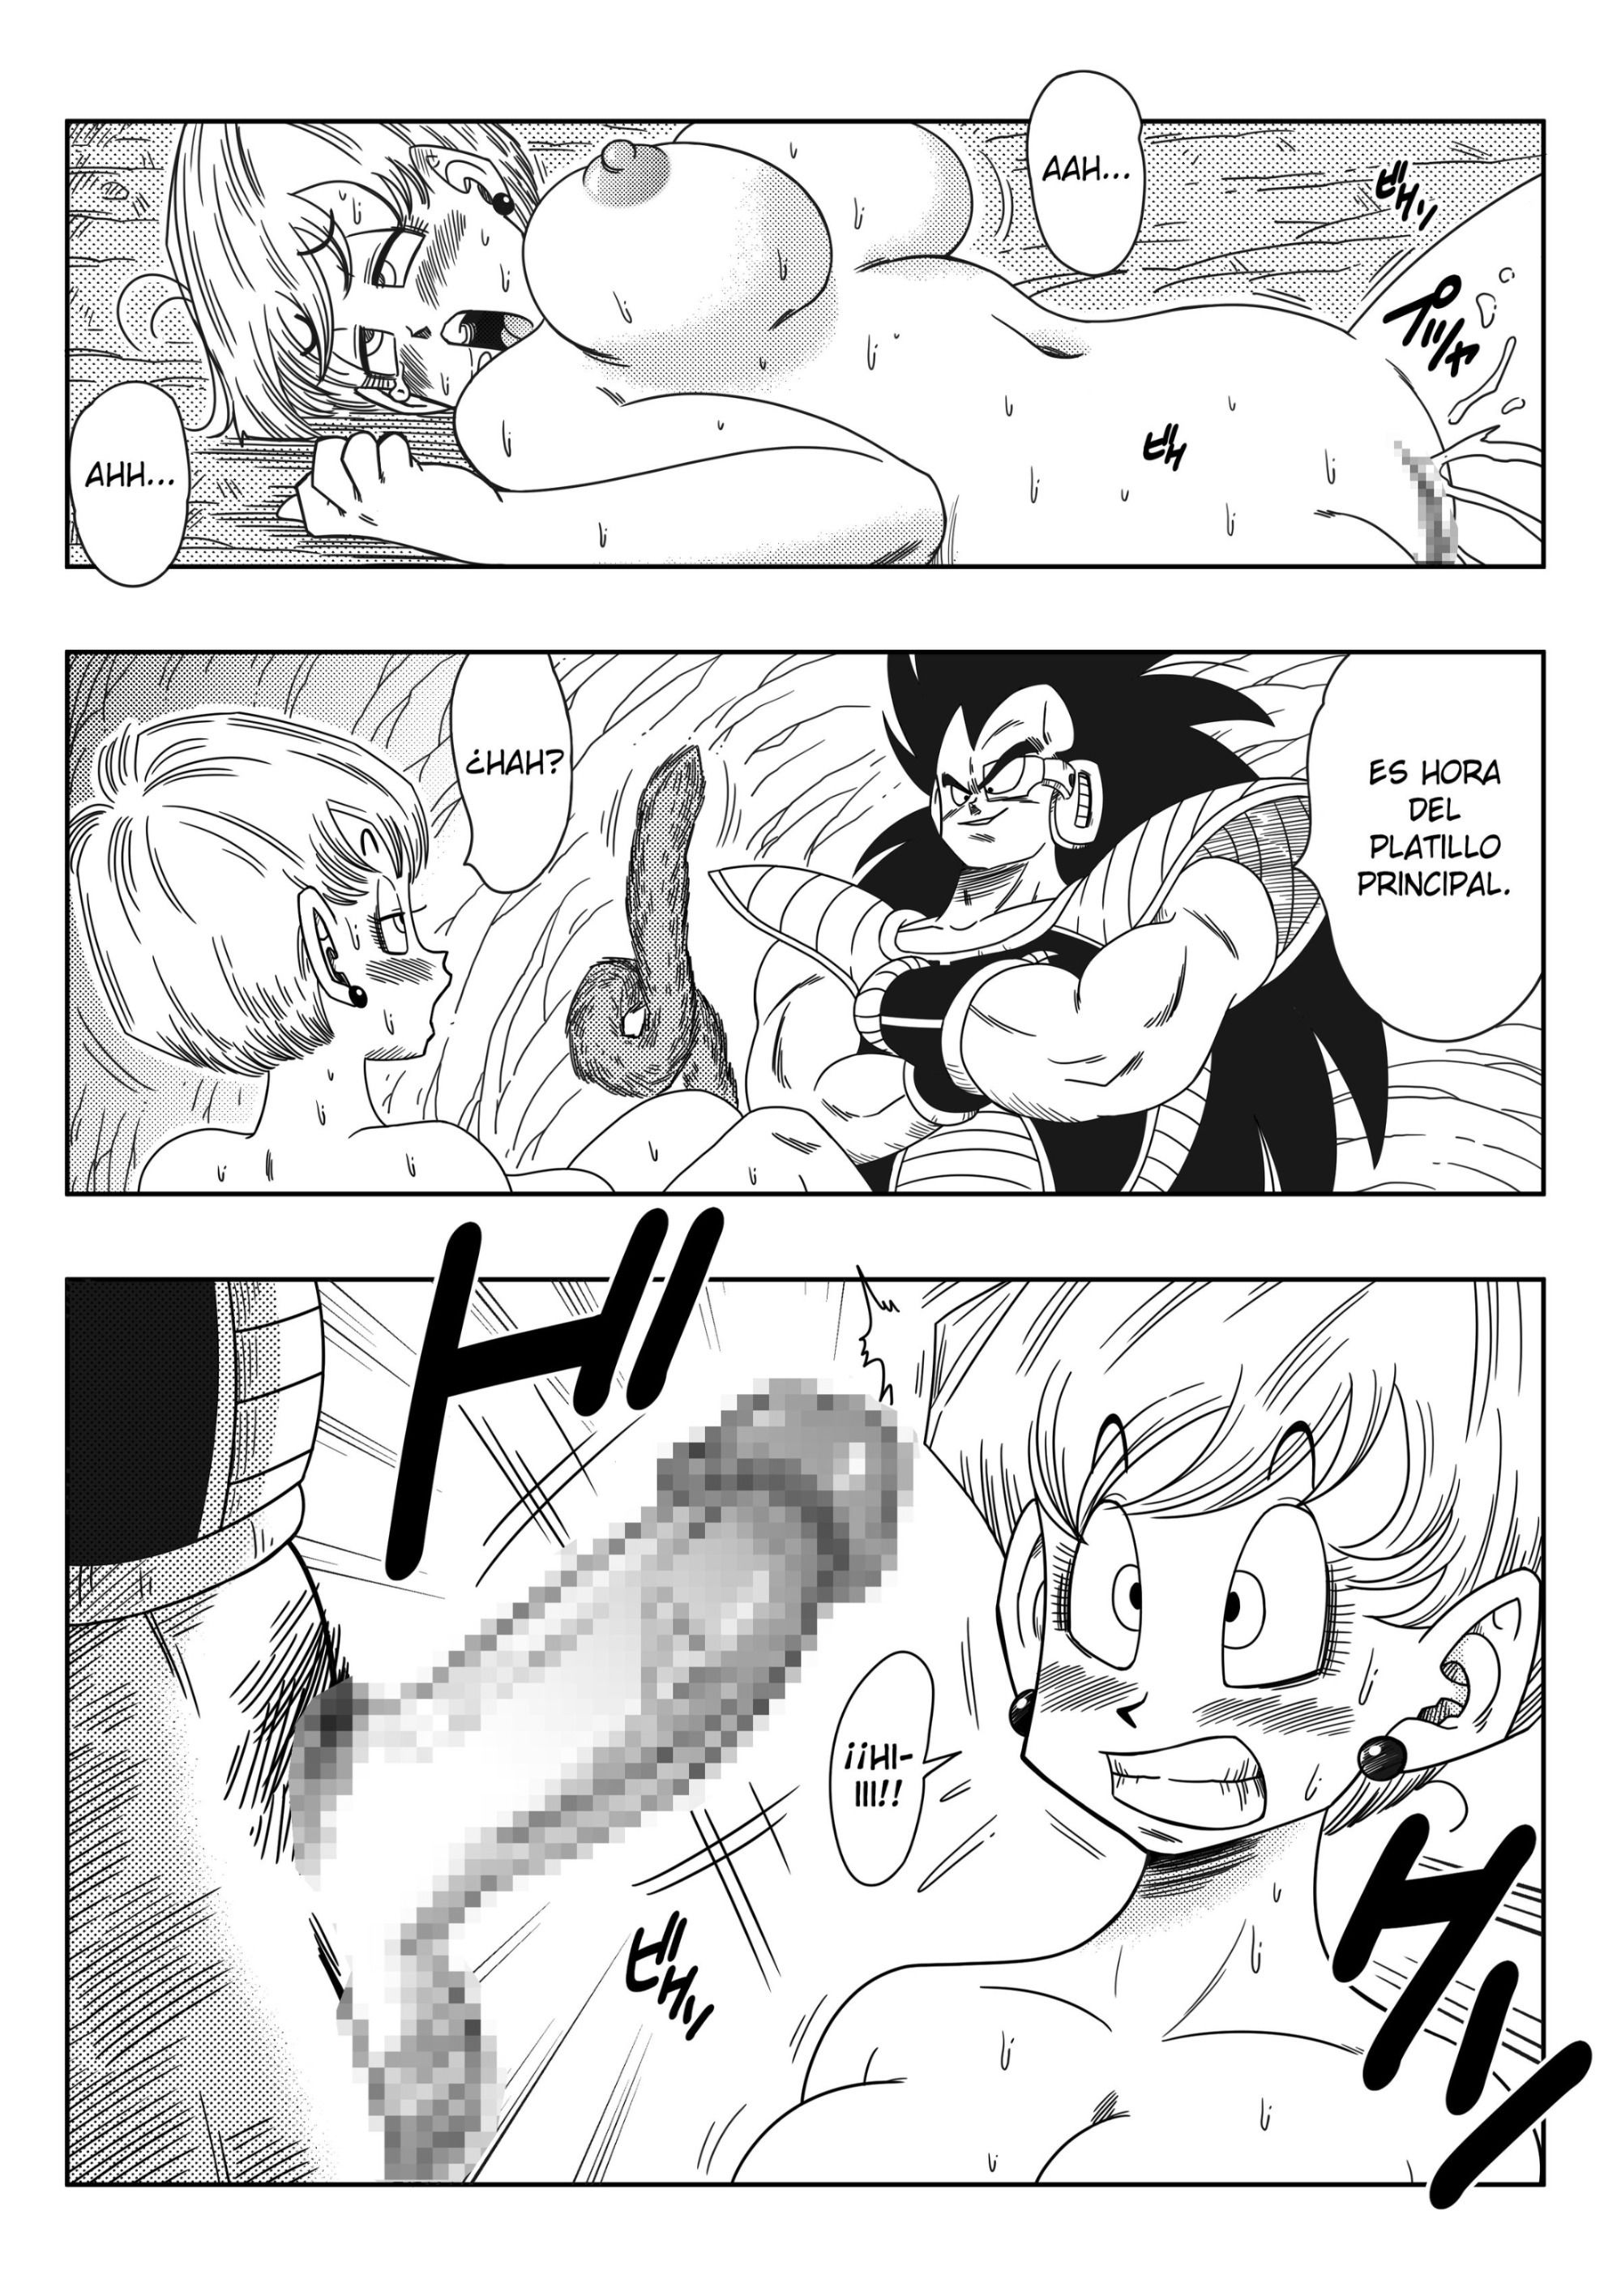 El hermano de Goku - 11